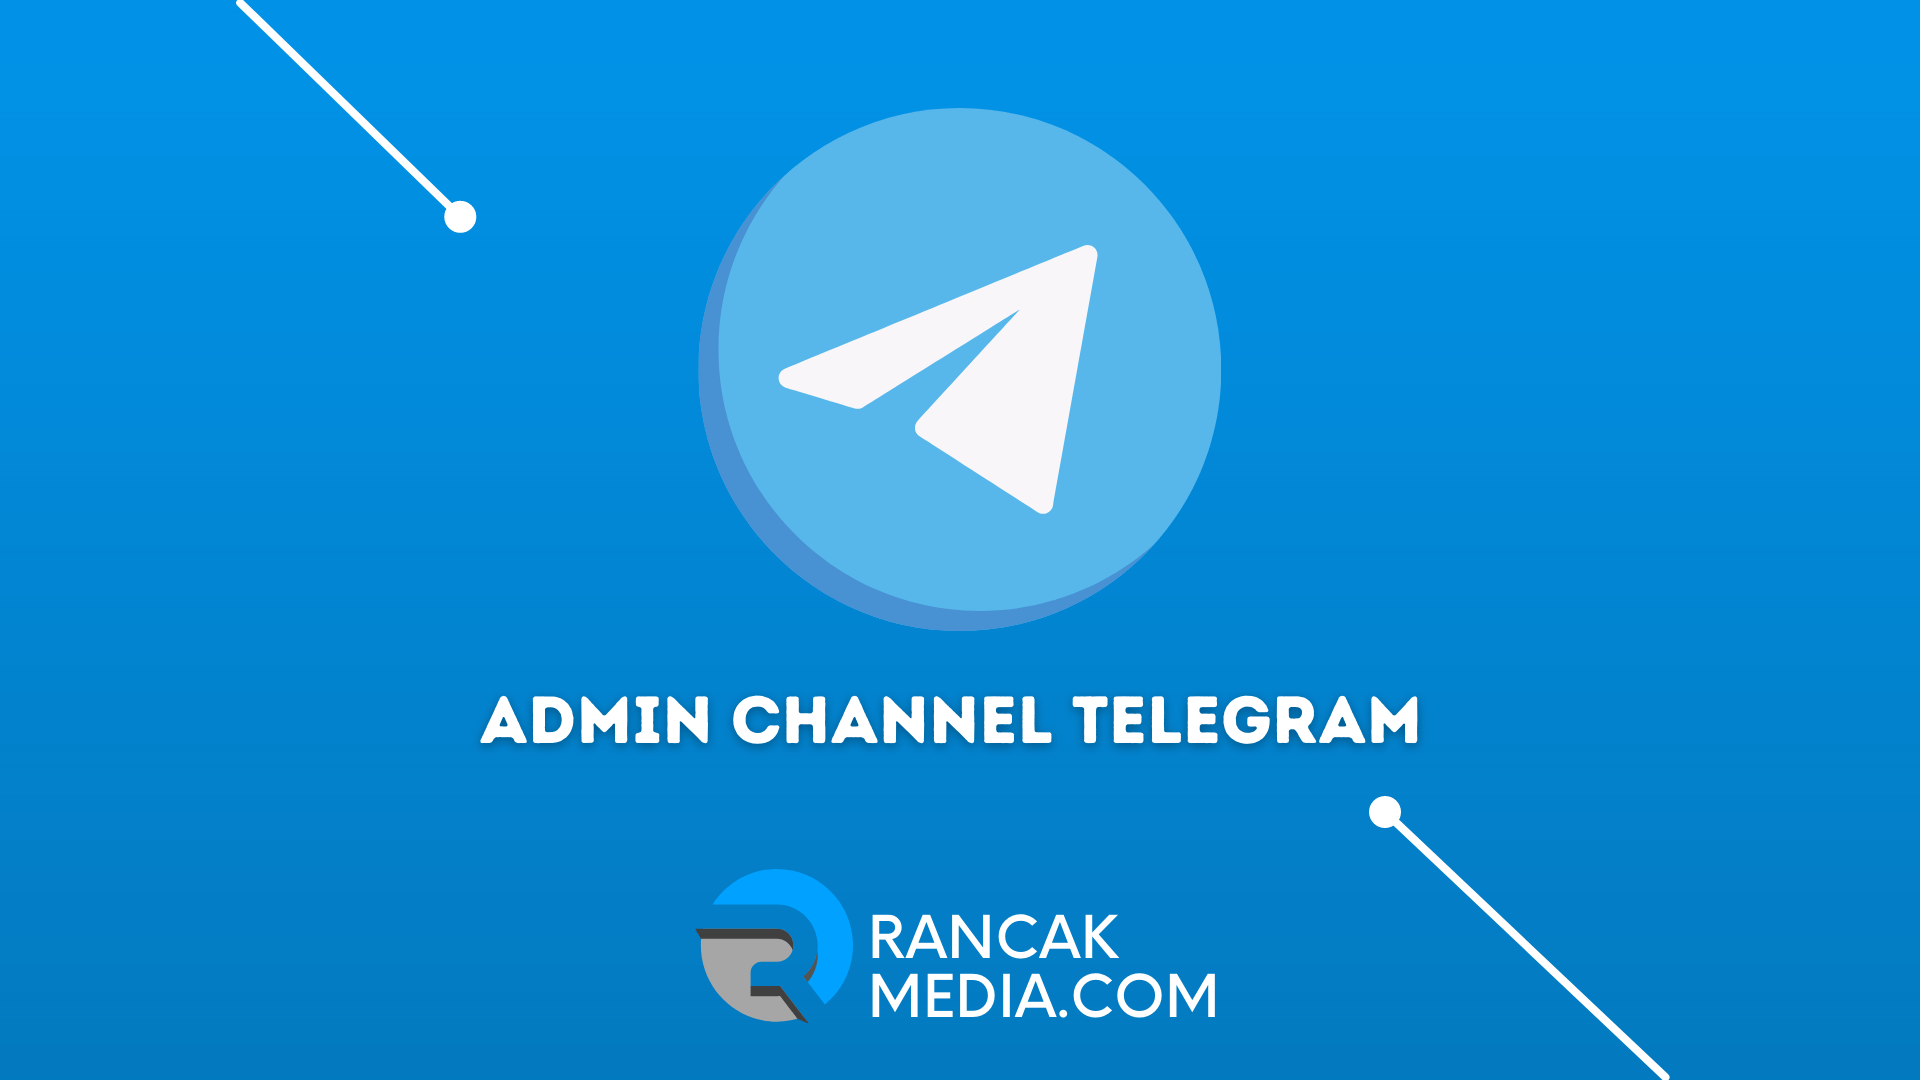 Cara Mengetahui Admin Channel Telegram. Cara Mengetahui Admin Channel Telegram